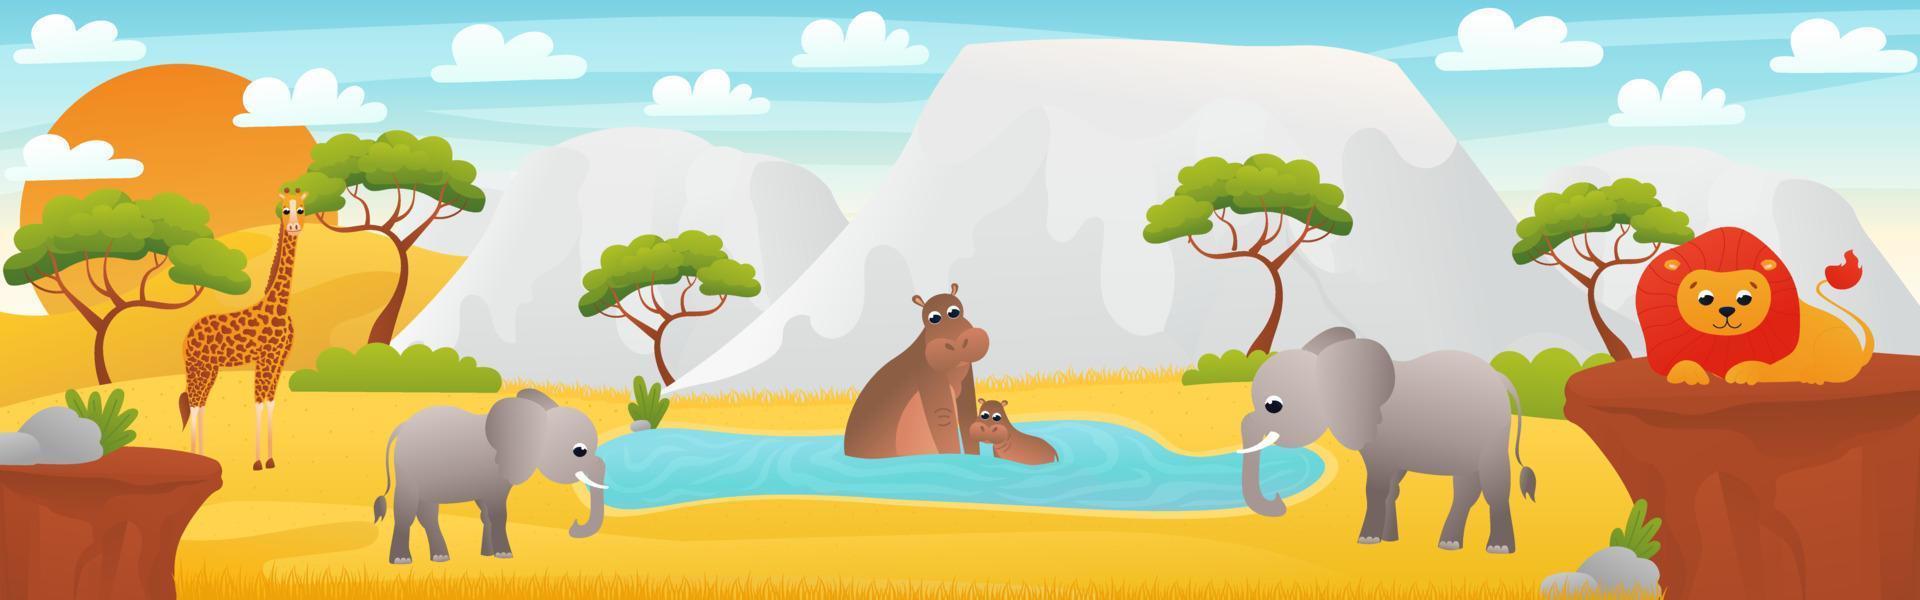 paisaje africano con lindos animales de dibujos animados - elefante, hipopótamo sentado en agua y león, banner web con escena de sabana, exploración del desierto africano, afiche horizontal del zoológico para imprimir vector